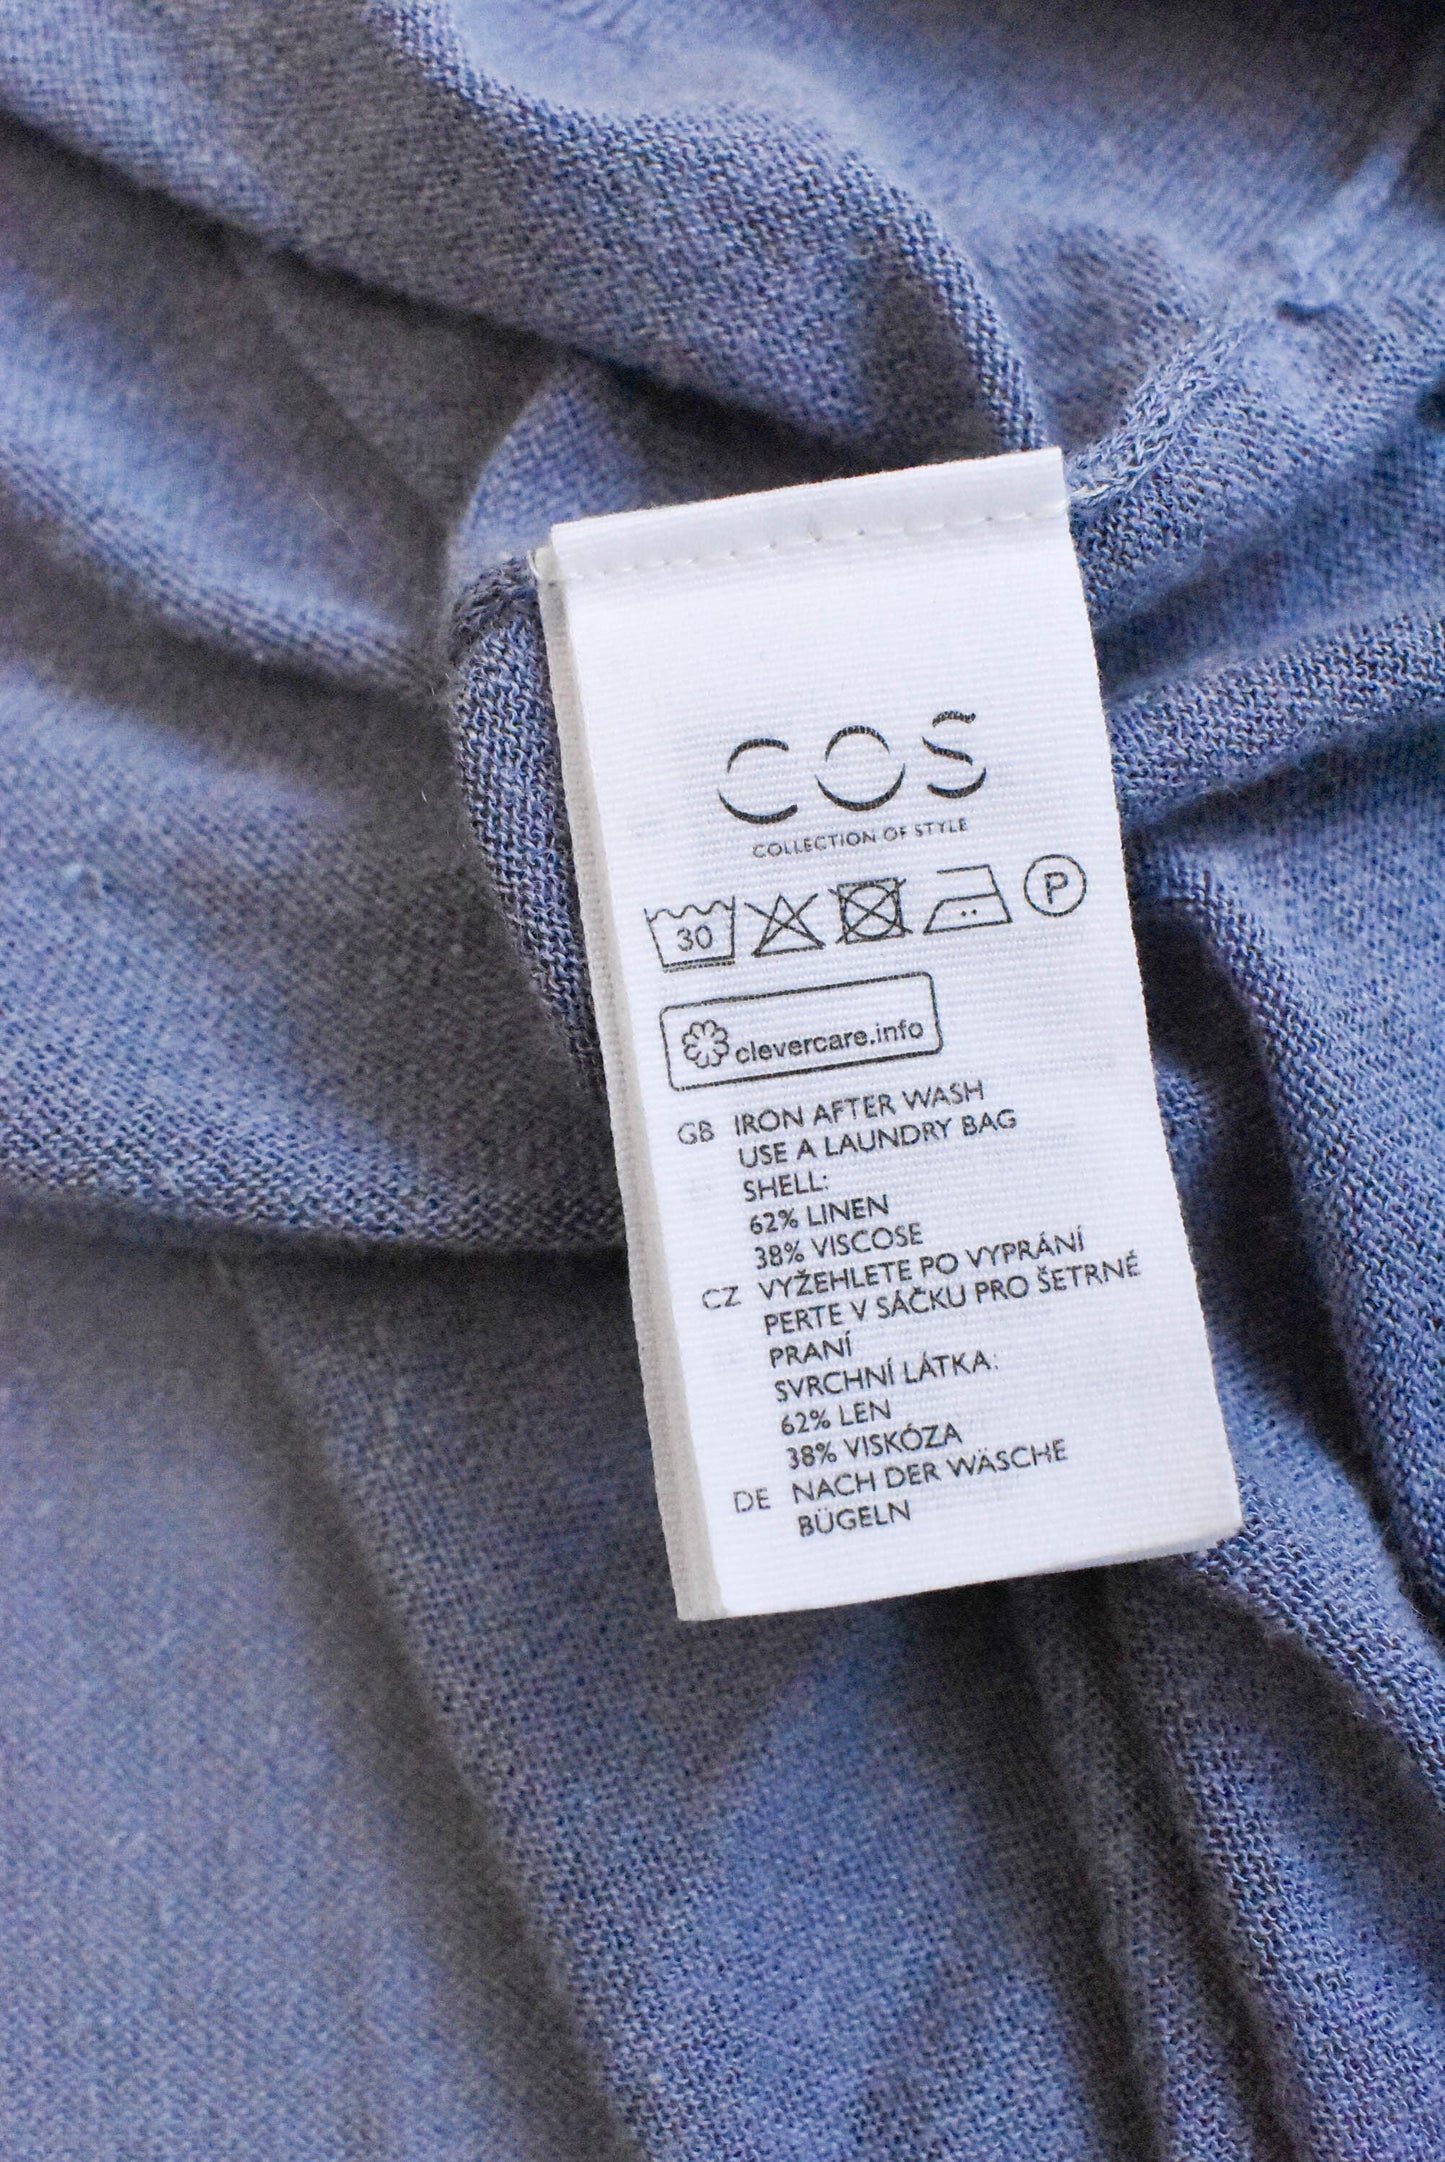 COS sheer blue linen-blend top, size S